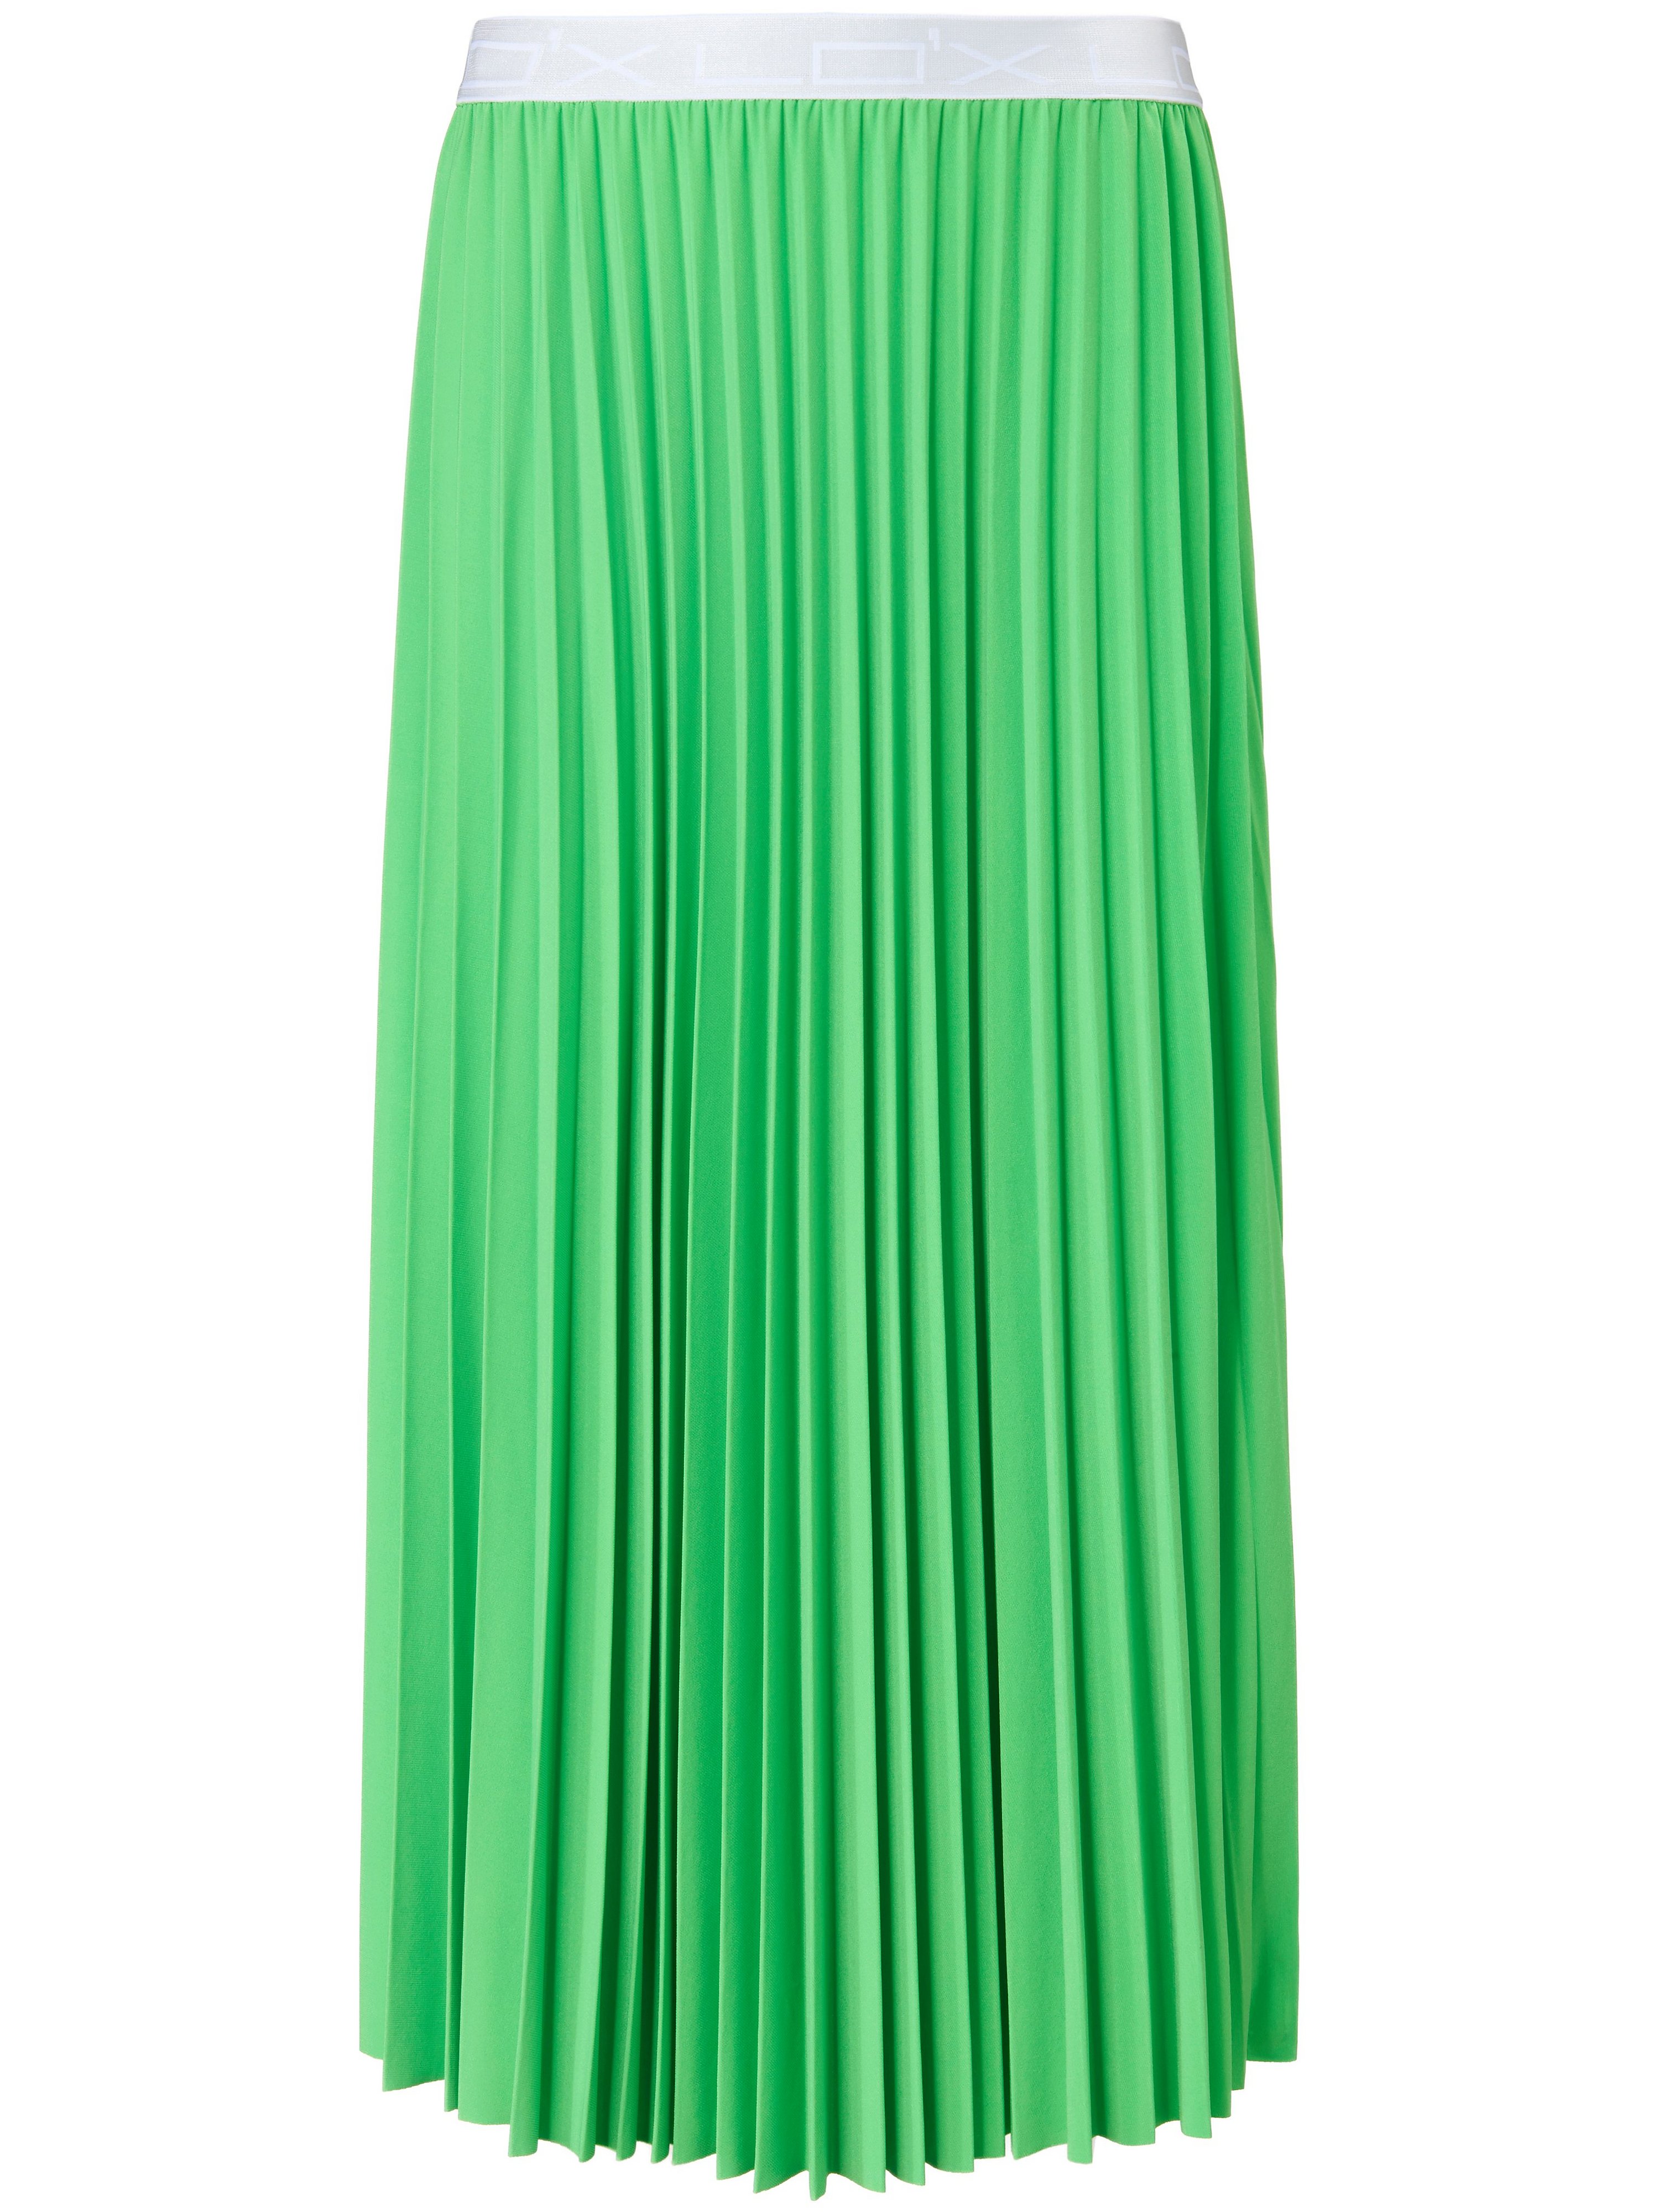 La jupe plissée jersey  Looxent vert taille 46